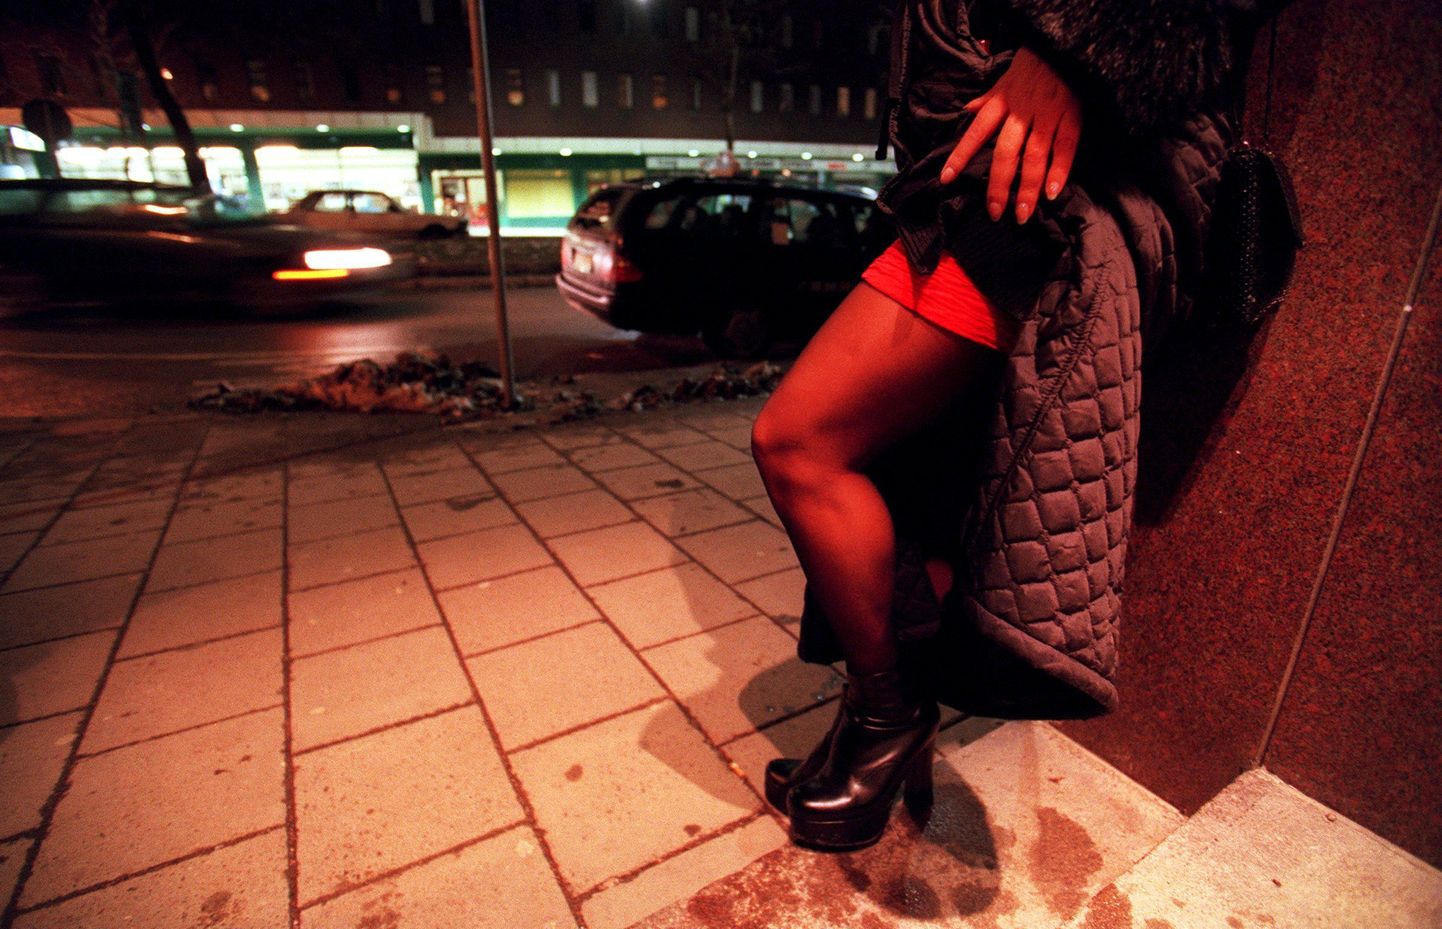 Prostituut. Foto on illustreeriv